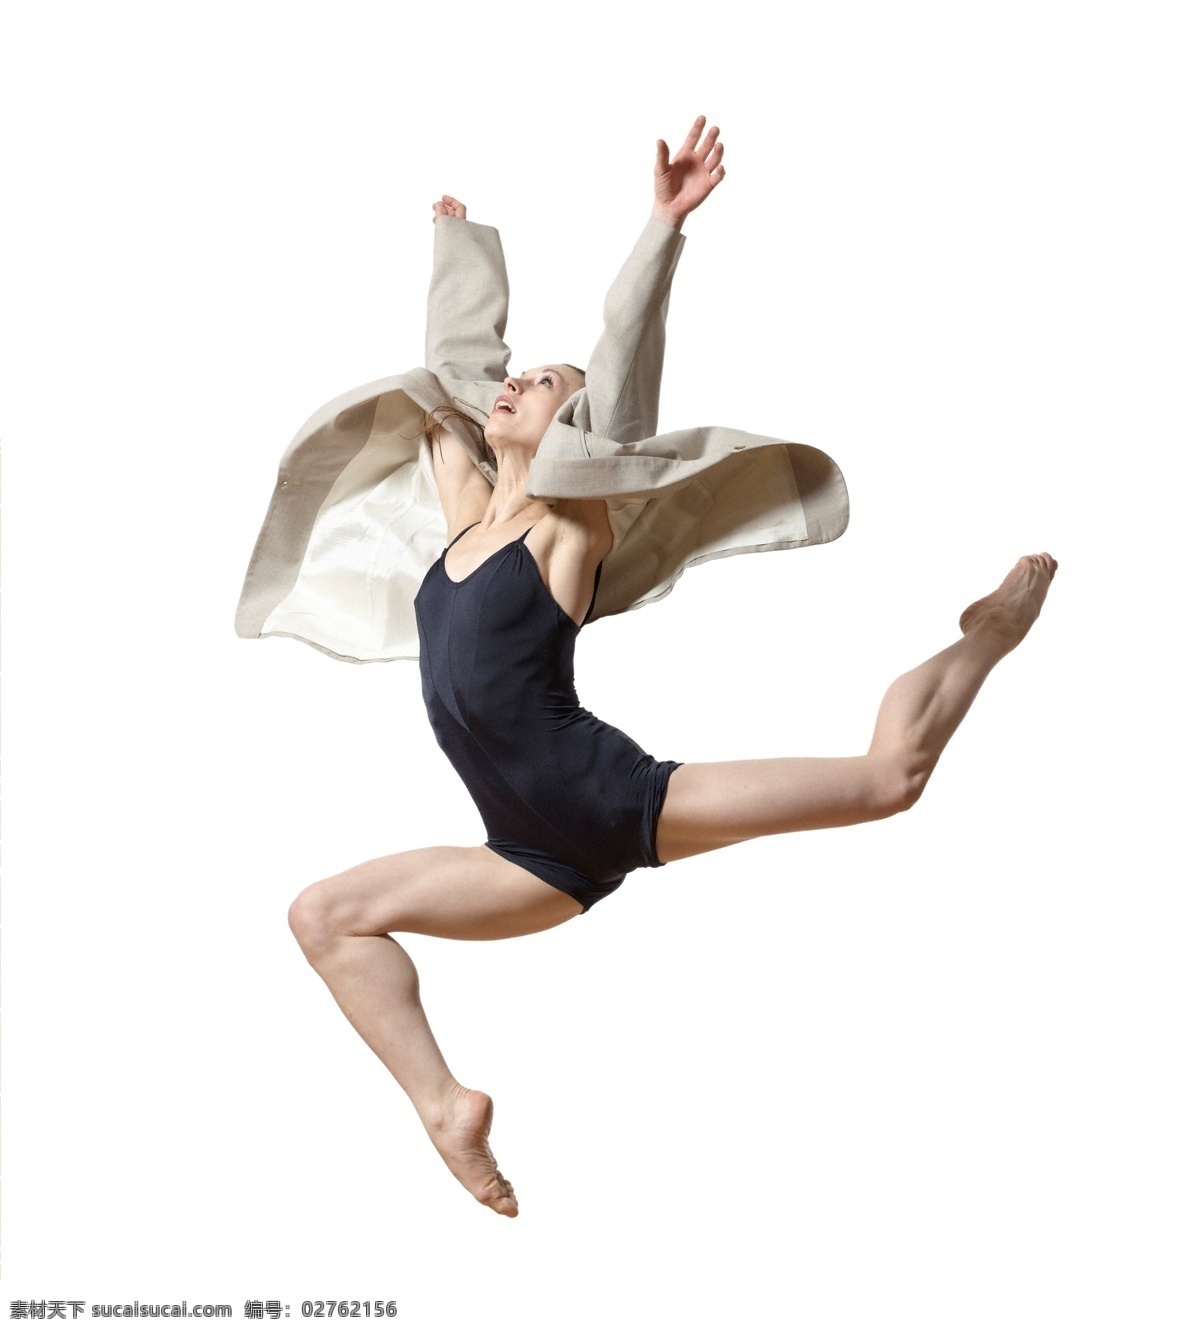 芭蕾 芭蕾舞 短裤 飞舞 妇女 女人 女性 女性女人 现代芭蕾 舞 舞蹈 跳舞 跳 跳跃 舞动 舞姿 舞者 舞蹈家 紧身衣 紧身裤 全身像 摄影图库 人物图库 psd源文件